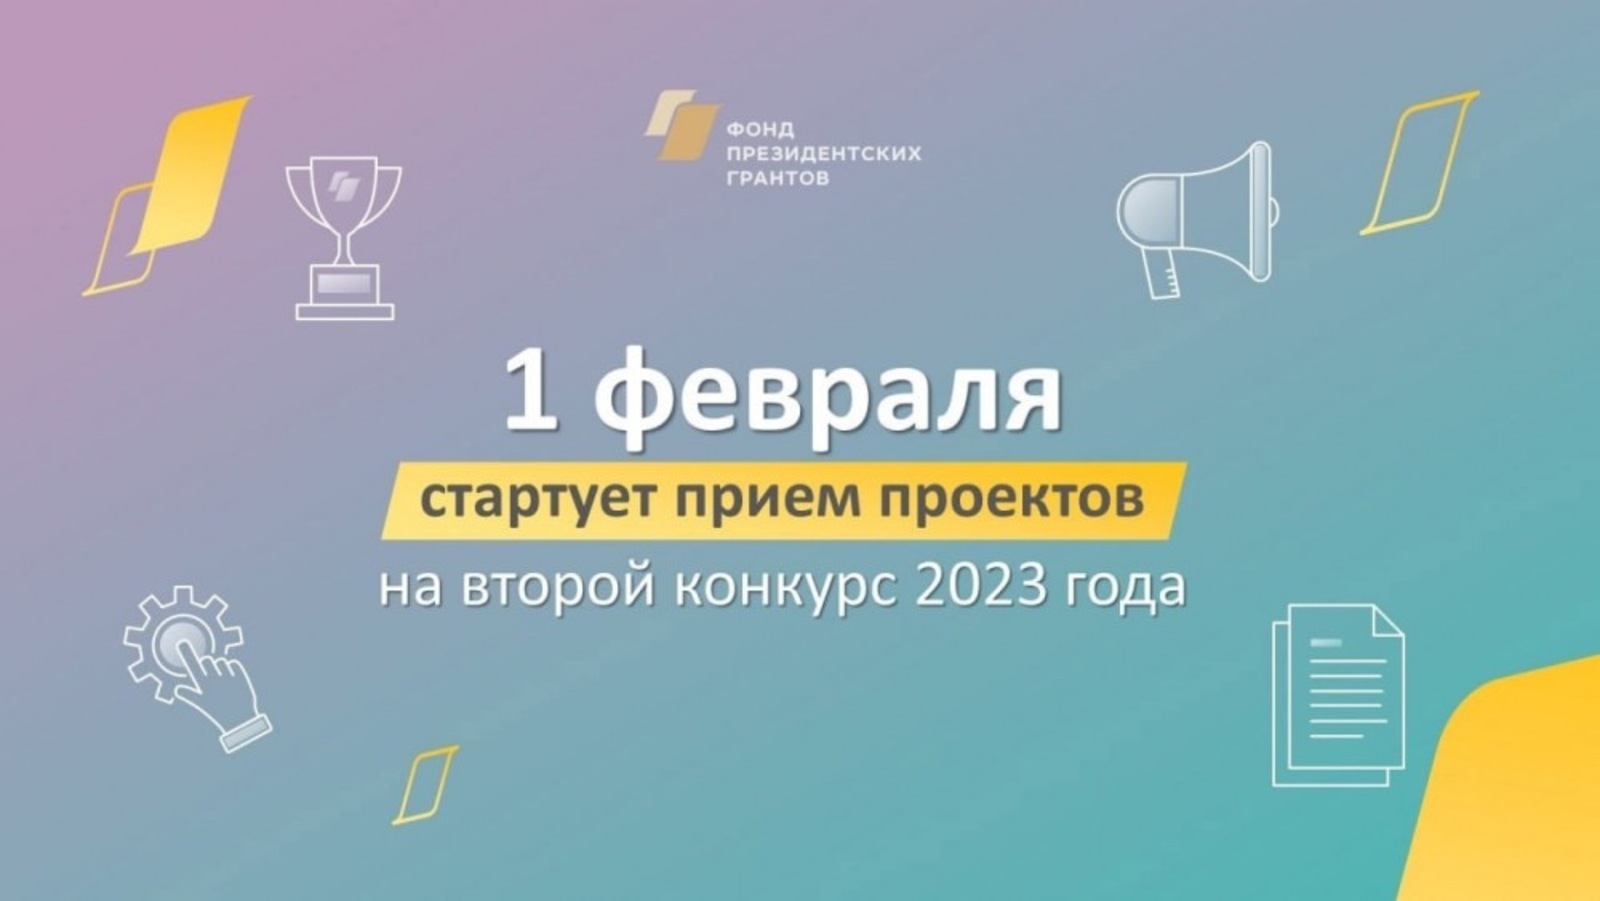 НКО Башкортостана могут принять участие во втором конкурсе президентских грантов 2023 года – прием заявок начнется 1 февраля